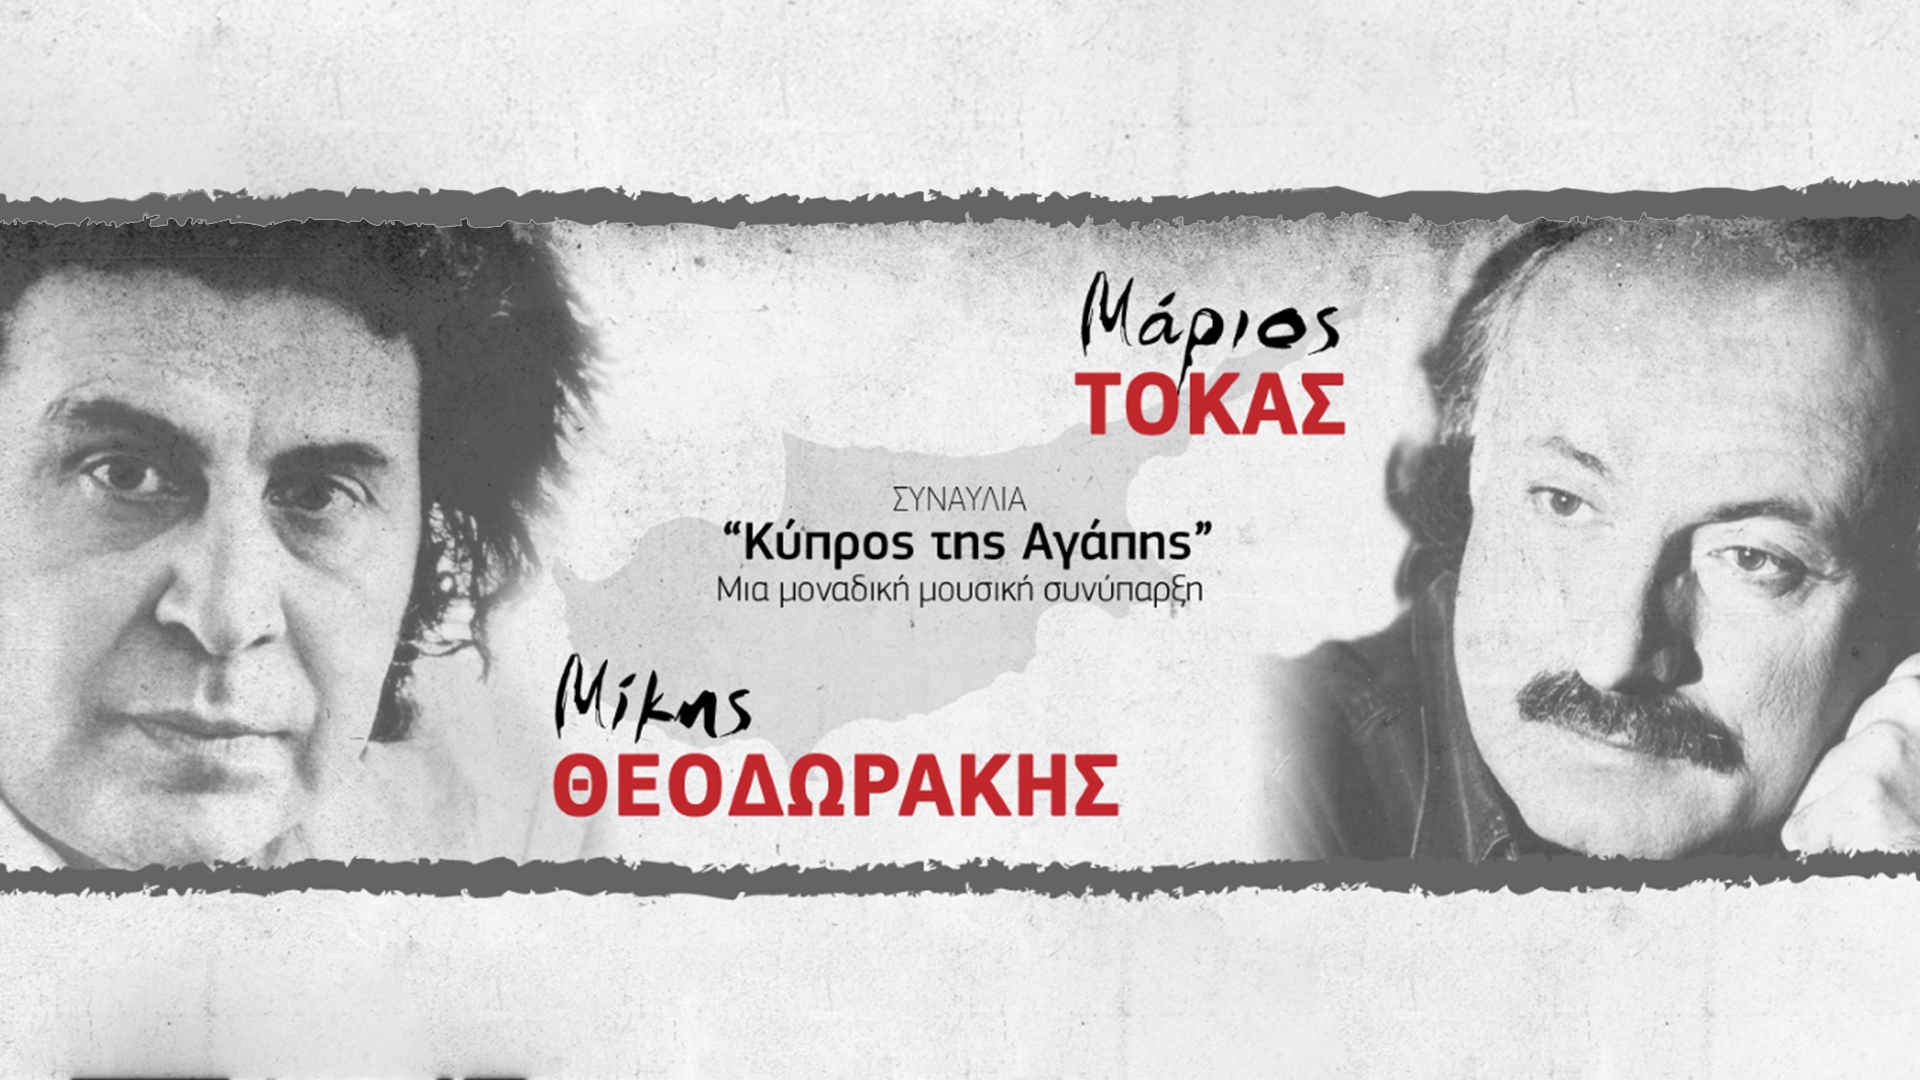 Μίκης Θεοδωράκης – Μάριος Τόκας: ”Κύπρος της Αγάπης” – Μια μοναδική μουσική συνάντηση που δεν πρέπει να χάσεις